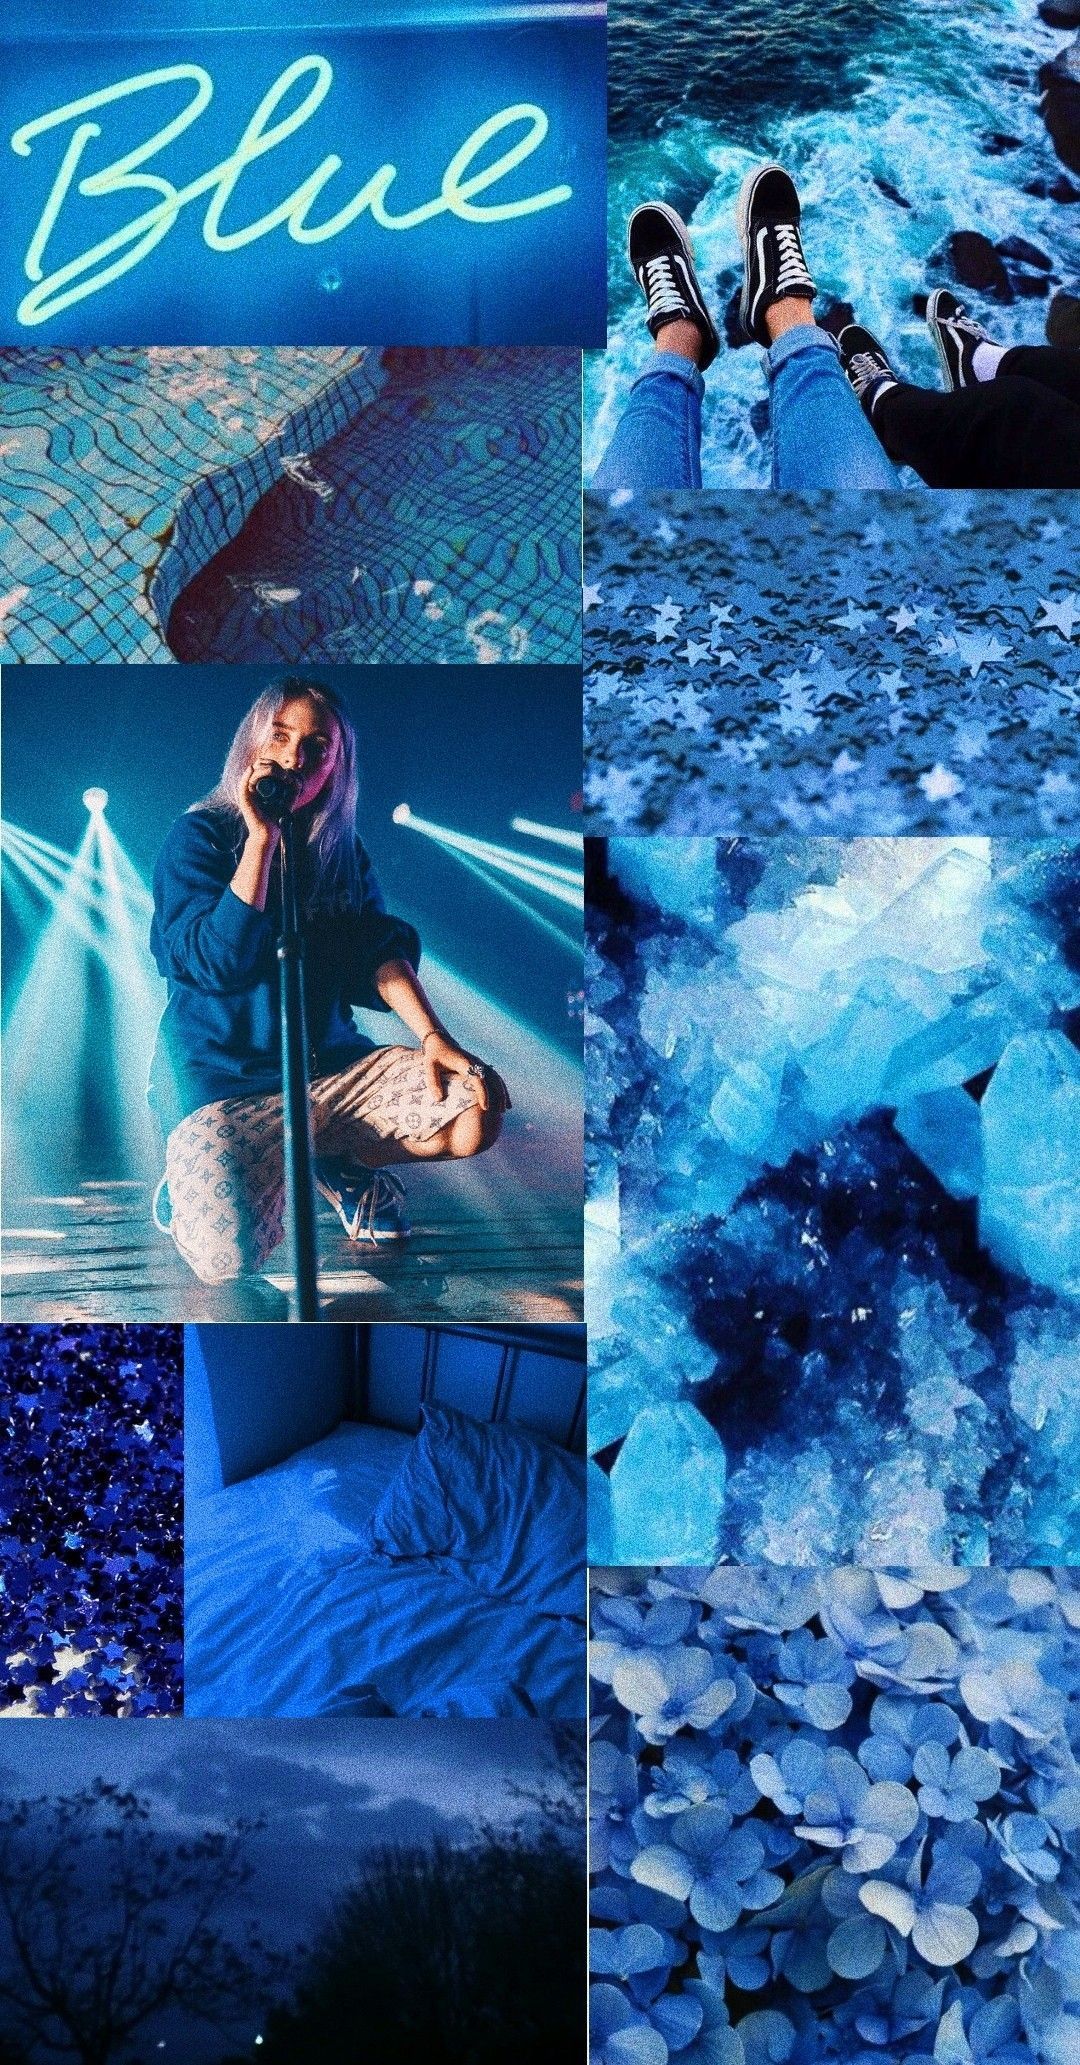 Aesthetic Background. Blue aesthetic, Christmas aesthetic wallpaper, Billie eilish